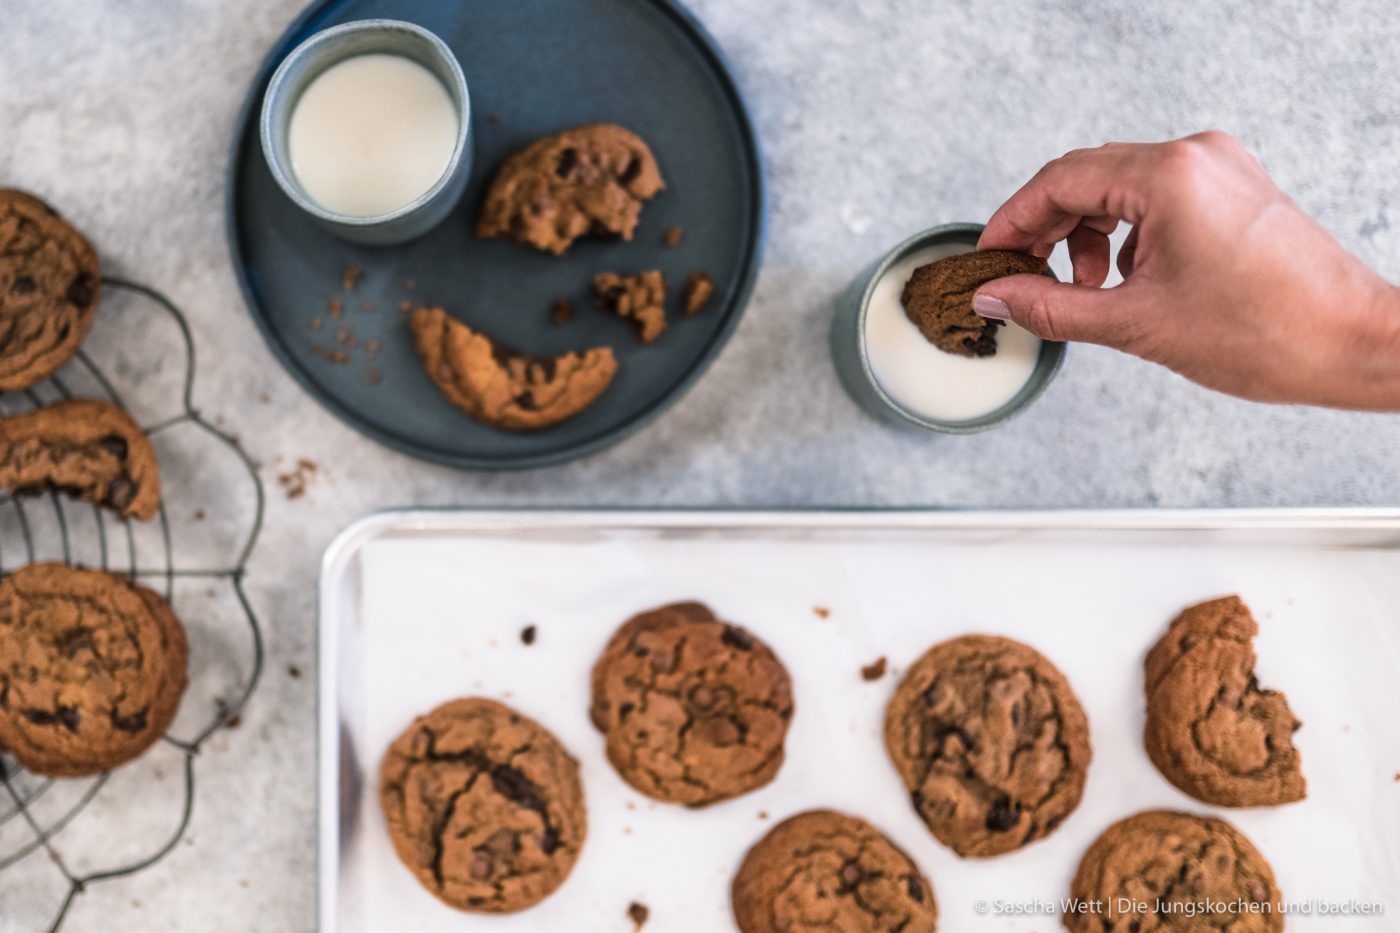 Choco Chip Cookie 1 | Wenn es eine Nascherei gibt, die wir über alles lieben, dann sind es Cookies! Die kleinen "Kekse" sind ruckzuck gemacht und lassen sich so perfekt variieren. Aber wenn mögen wir sie am Liebsten in der amerikanischen Variante - schon weich und saftig im Kern! Genau so ein Rezept haben wir heute für euch.